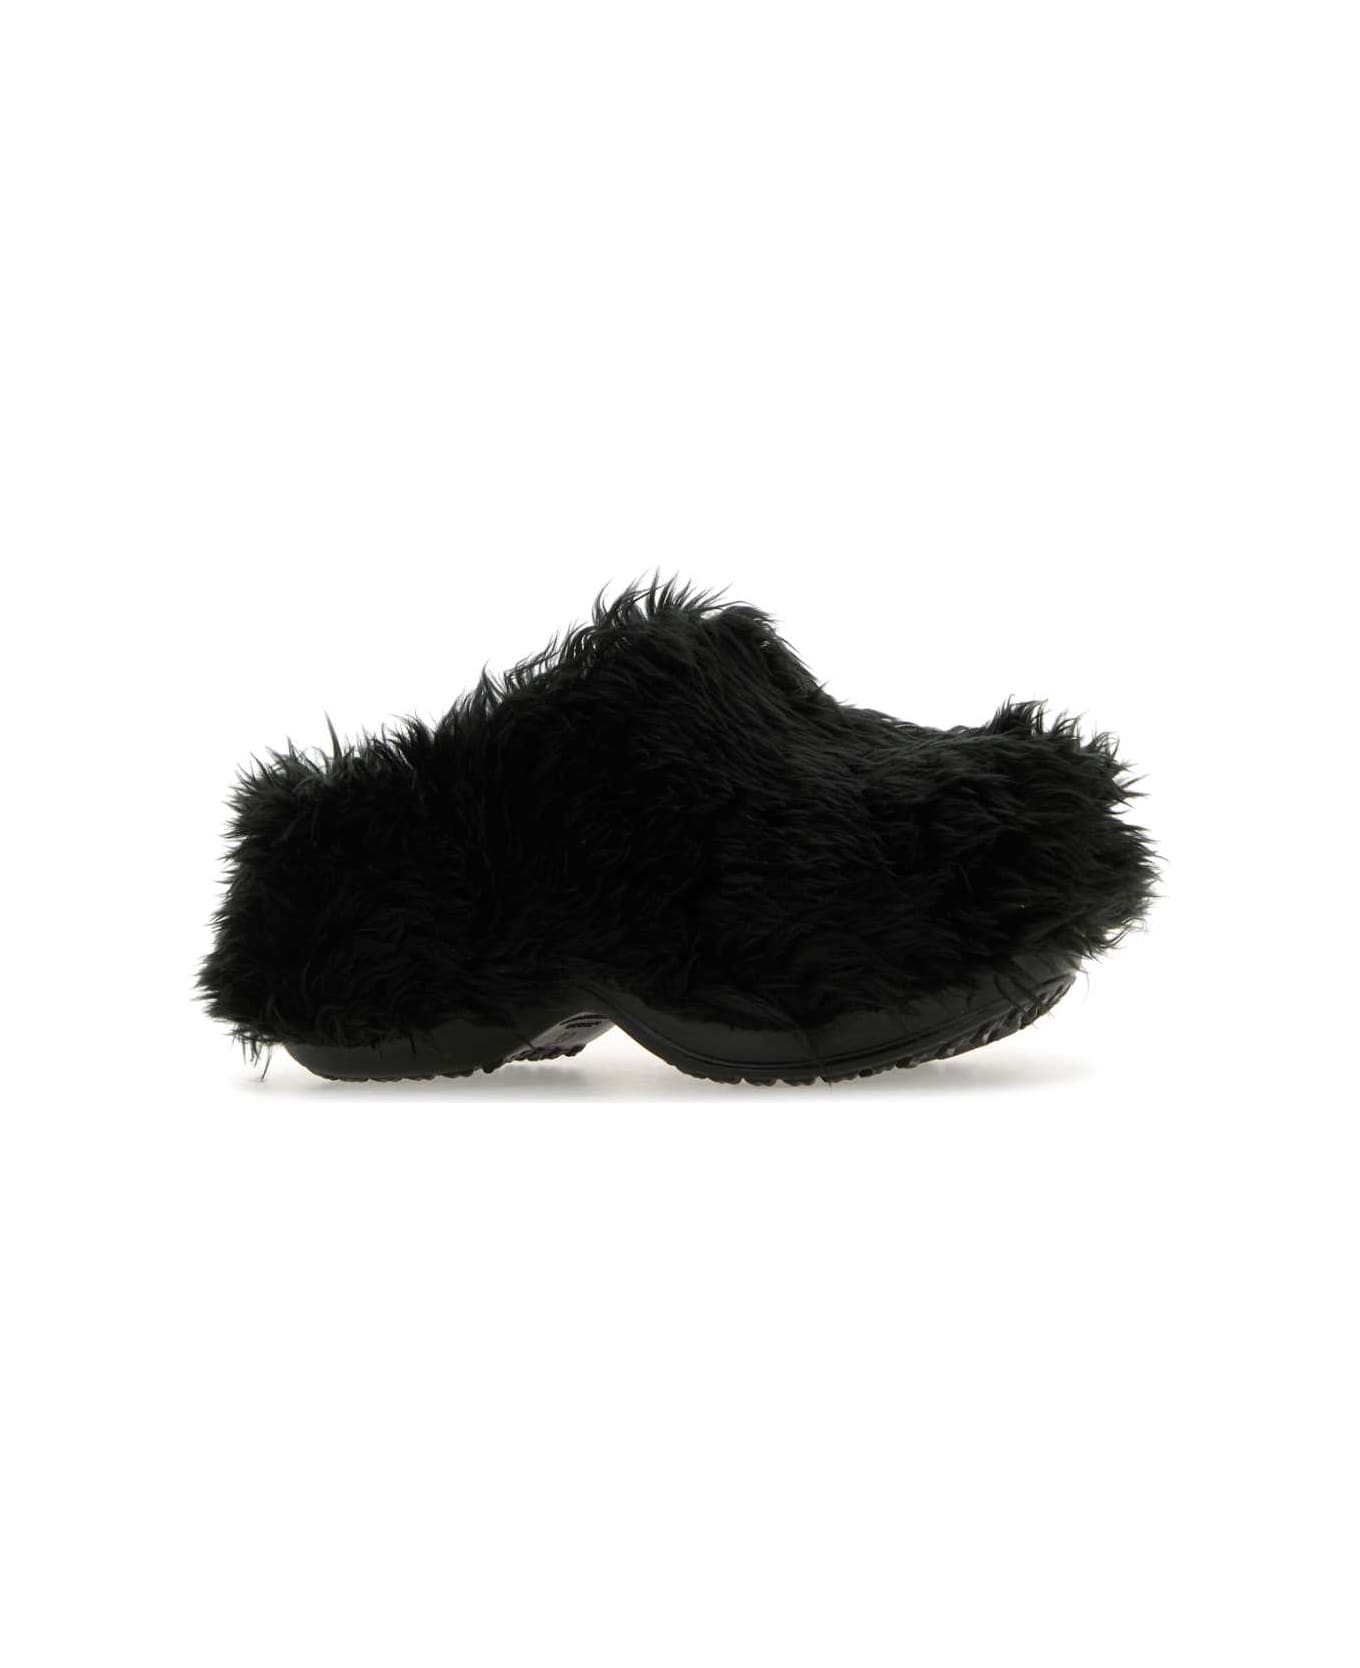 Balenciaga Black Rubber And Eco Fur Crocsâ ¢ Mules - Black